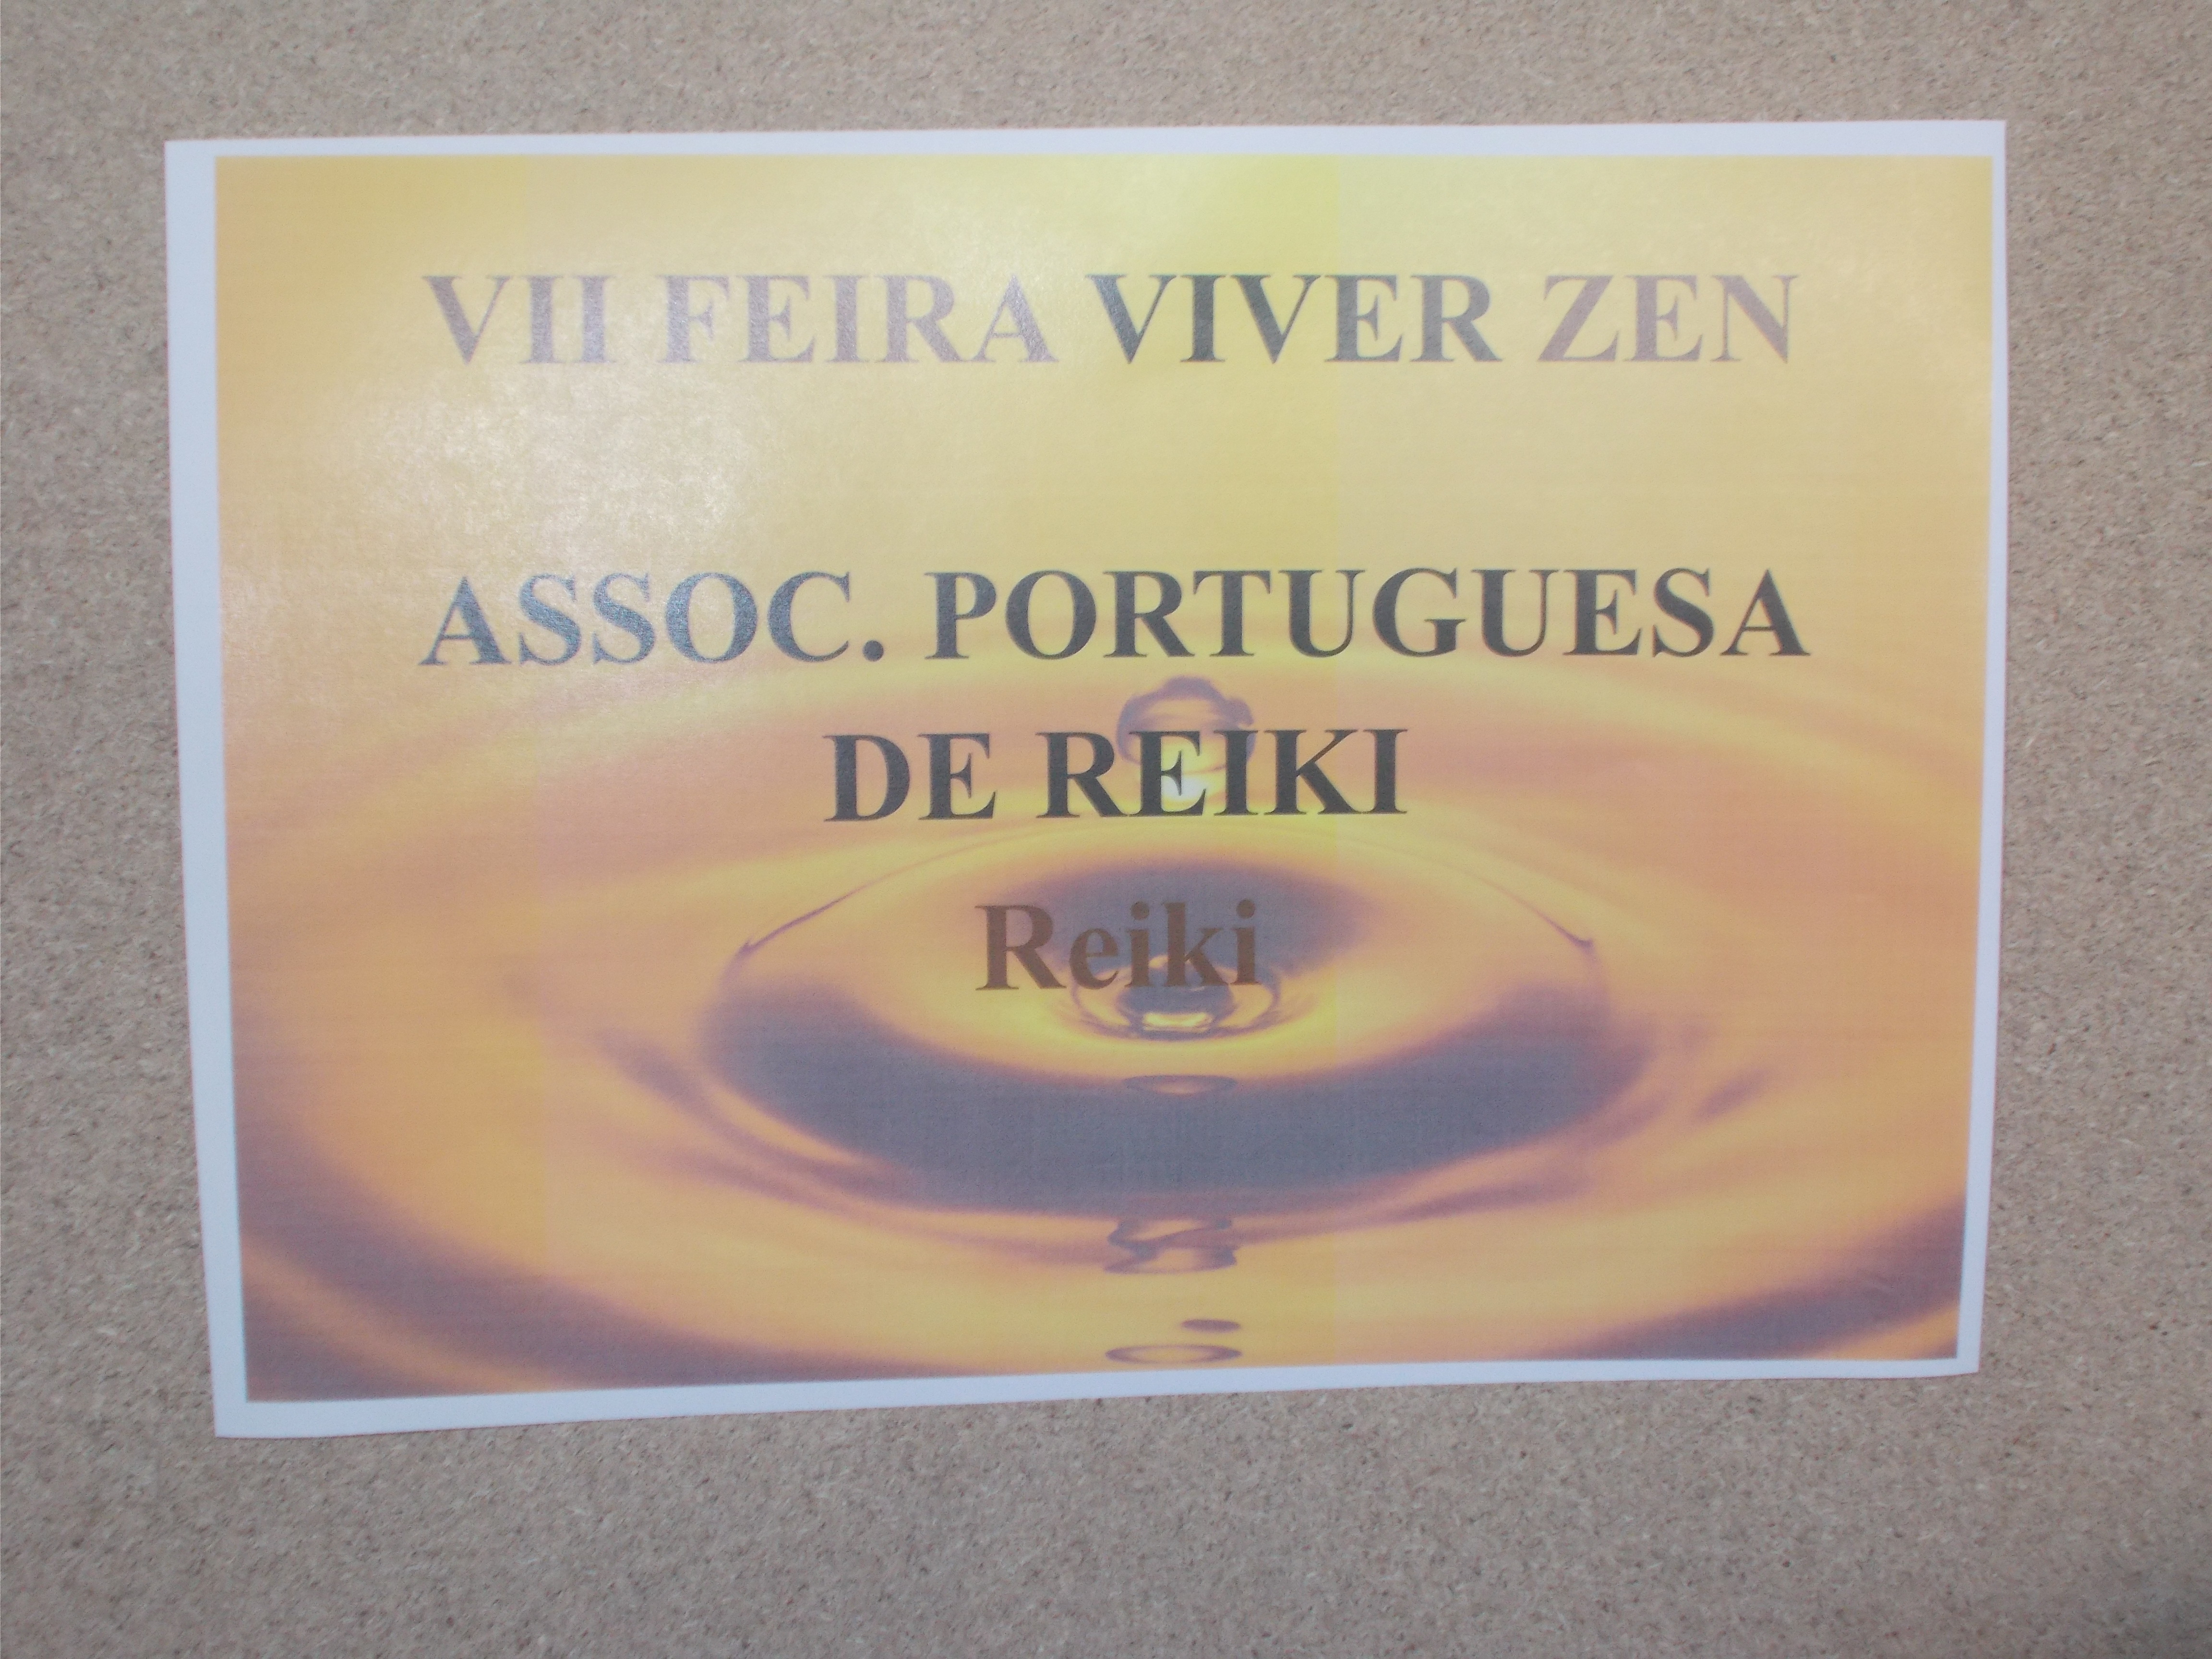 VII Feira Viver Zen – Núcleos Porto, Ermesinde e Penafiel